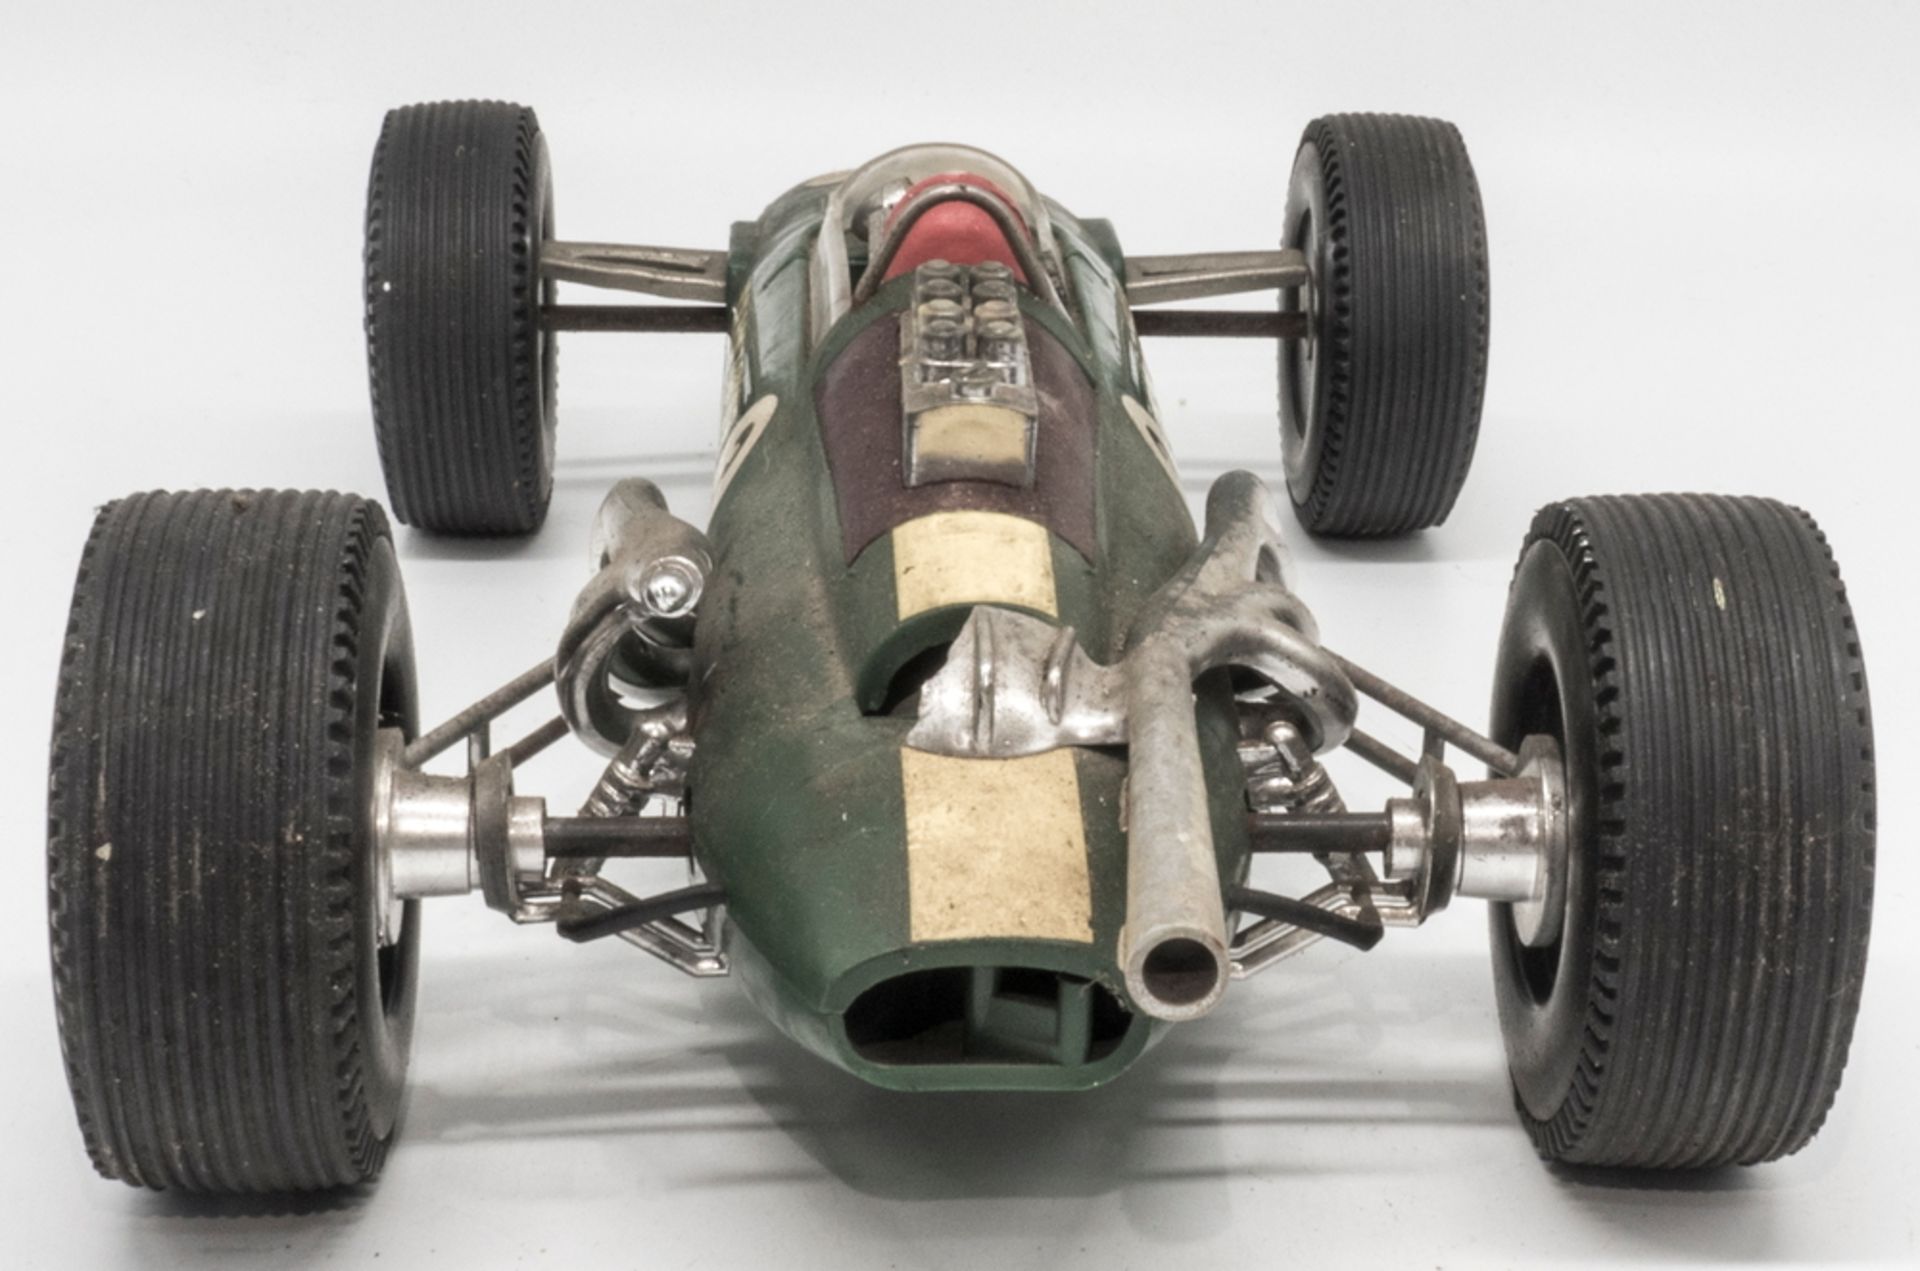 Gama Formel - Rennwagen Lotus, Maßstab: 1:16. Länge: ca. 34 cm. Friktionsantrieb. Mit Fehlteilen. - Image 4 of 6